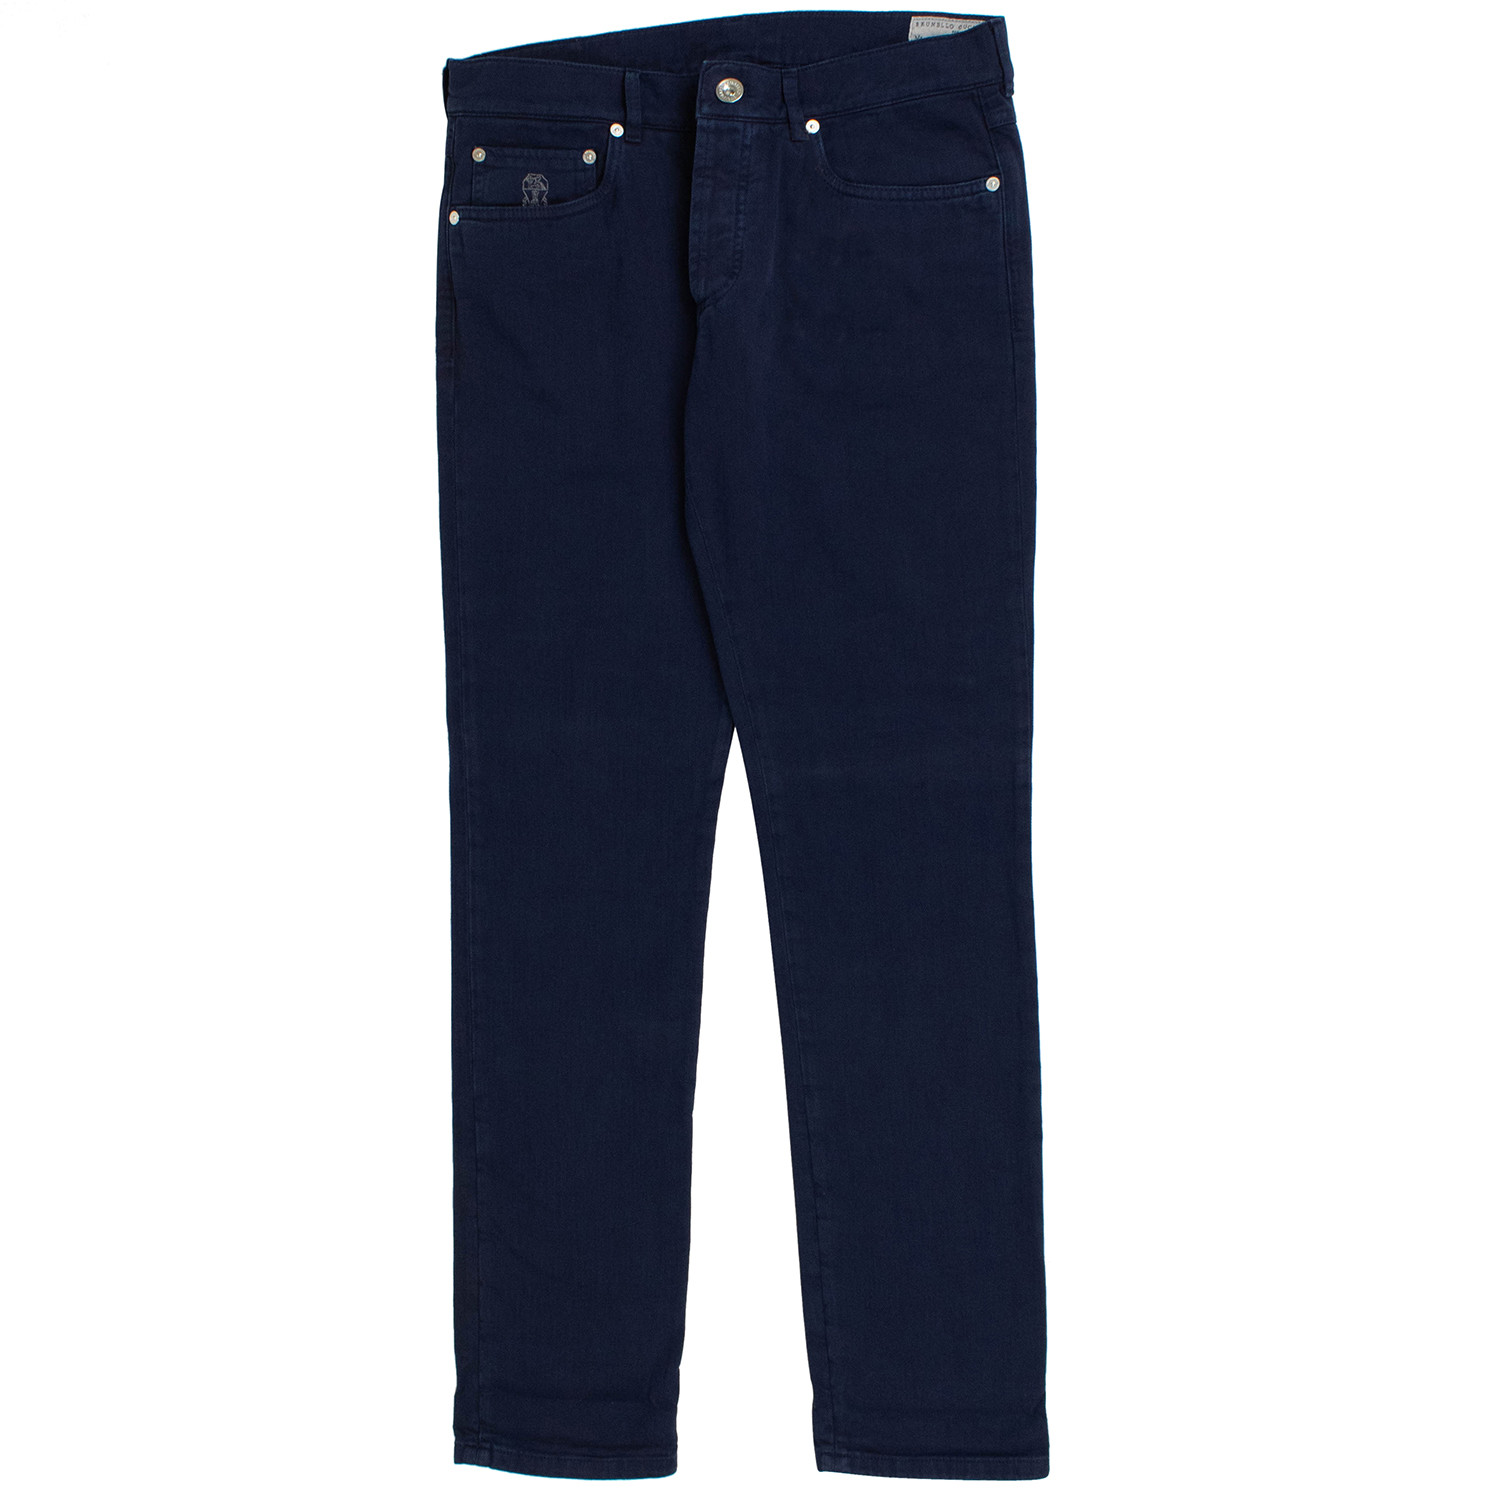 navy blue cotton jeans